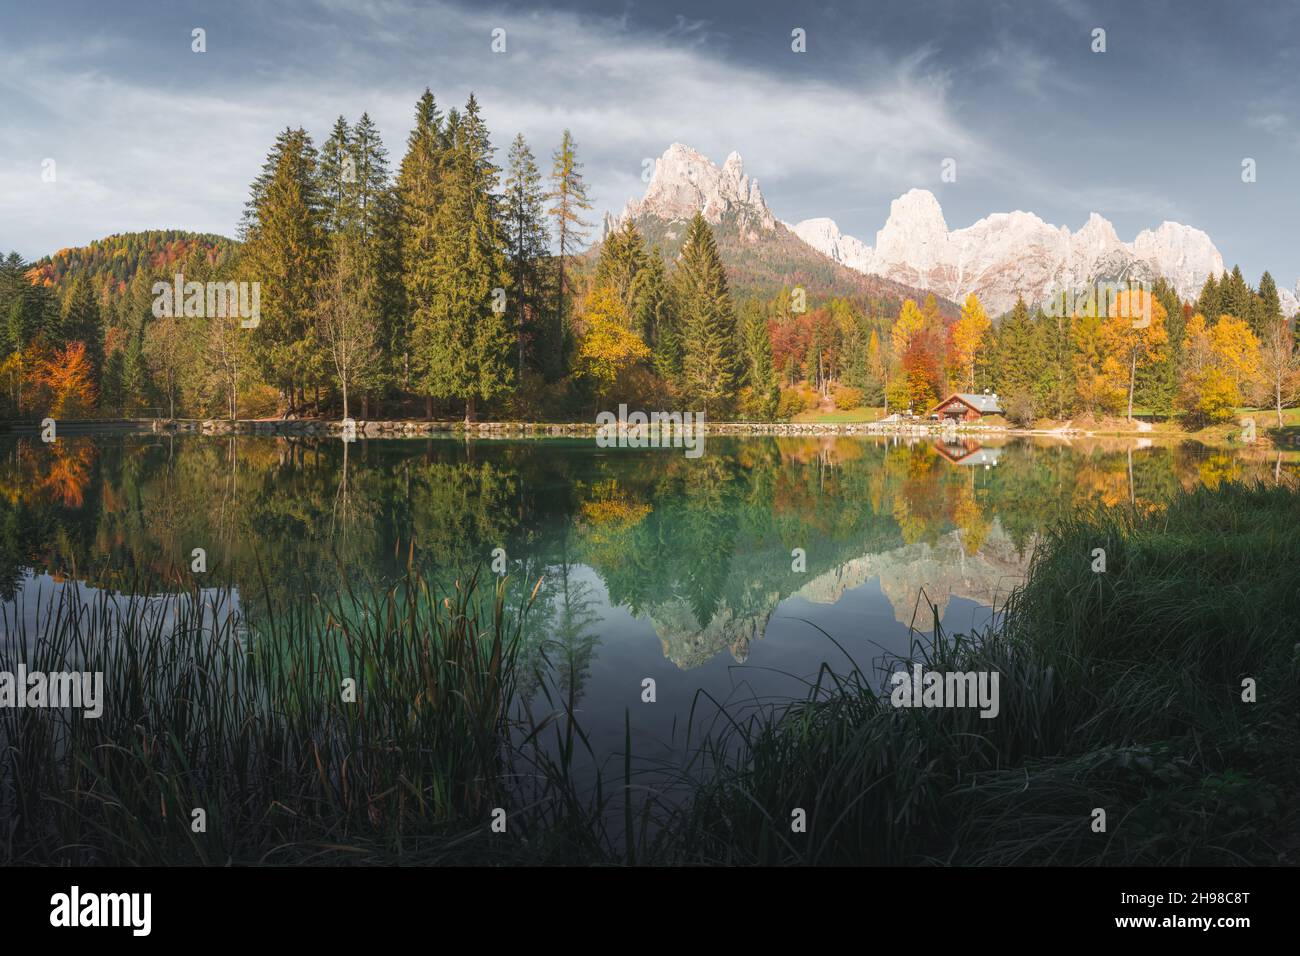 Malerischer Blick auf den herbstlichen Welsperg-See in den Dolomiten. Canali-Tal, Primiero San Martino di Castrozza, Provinz Trient, Italien. Landschaftsfotografie Stockfoto